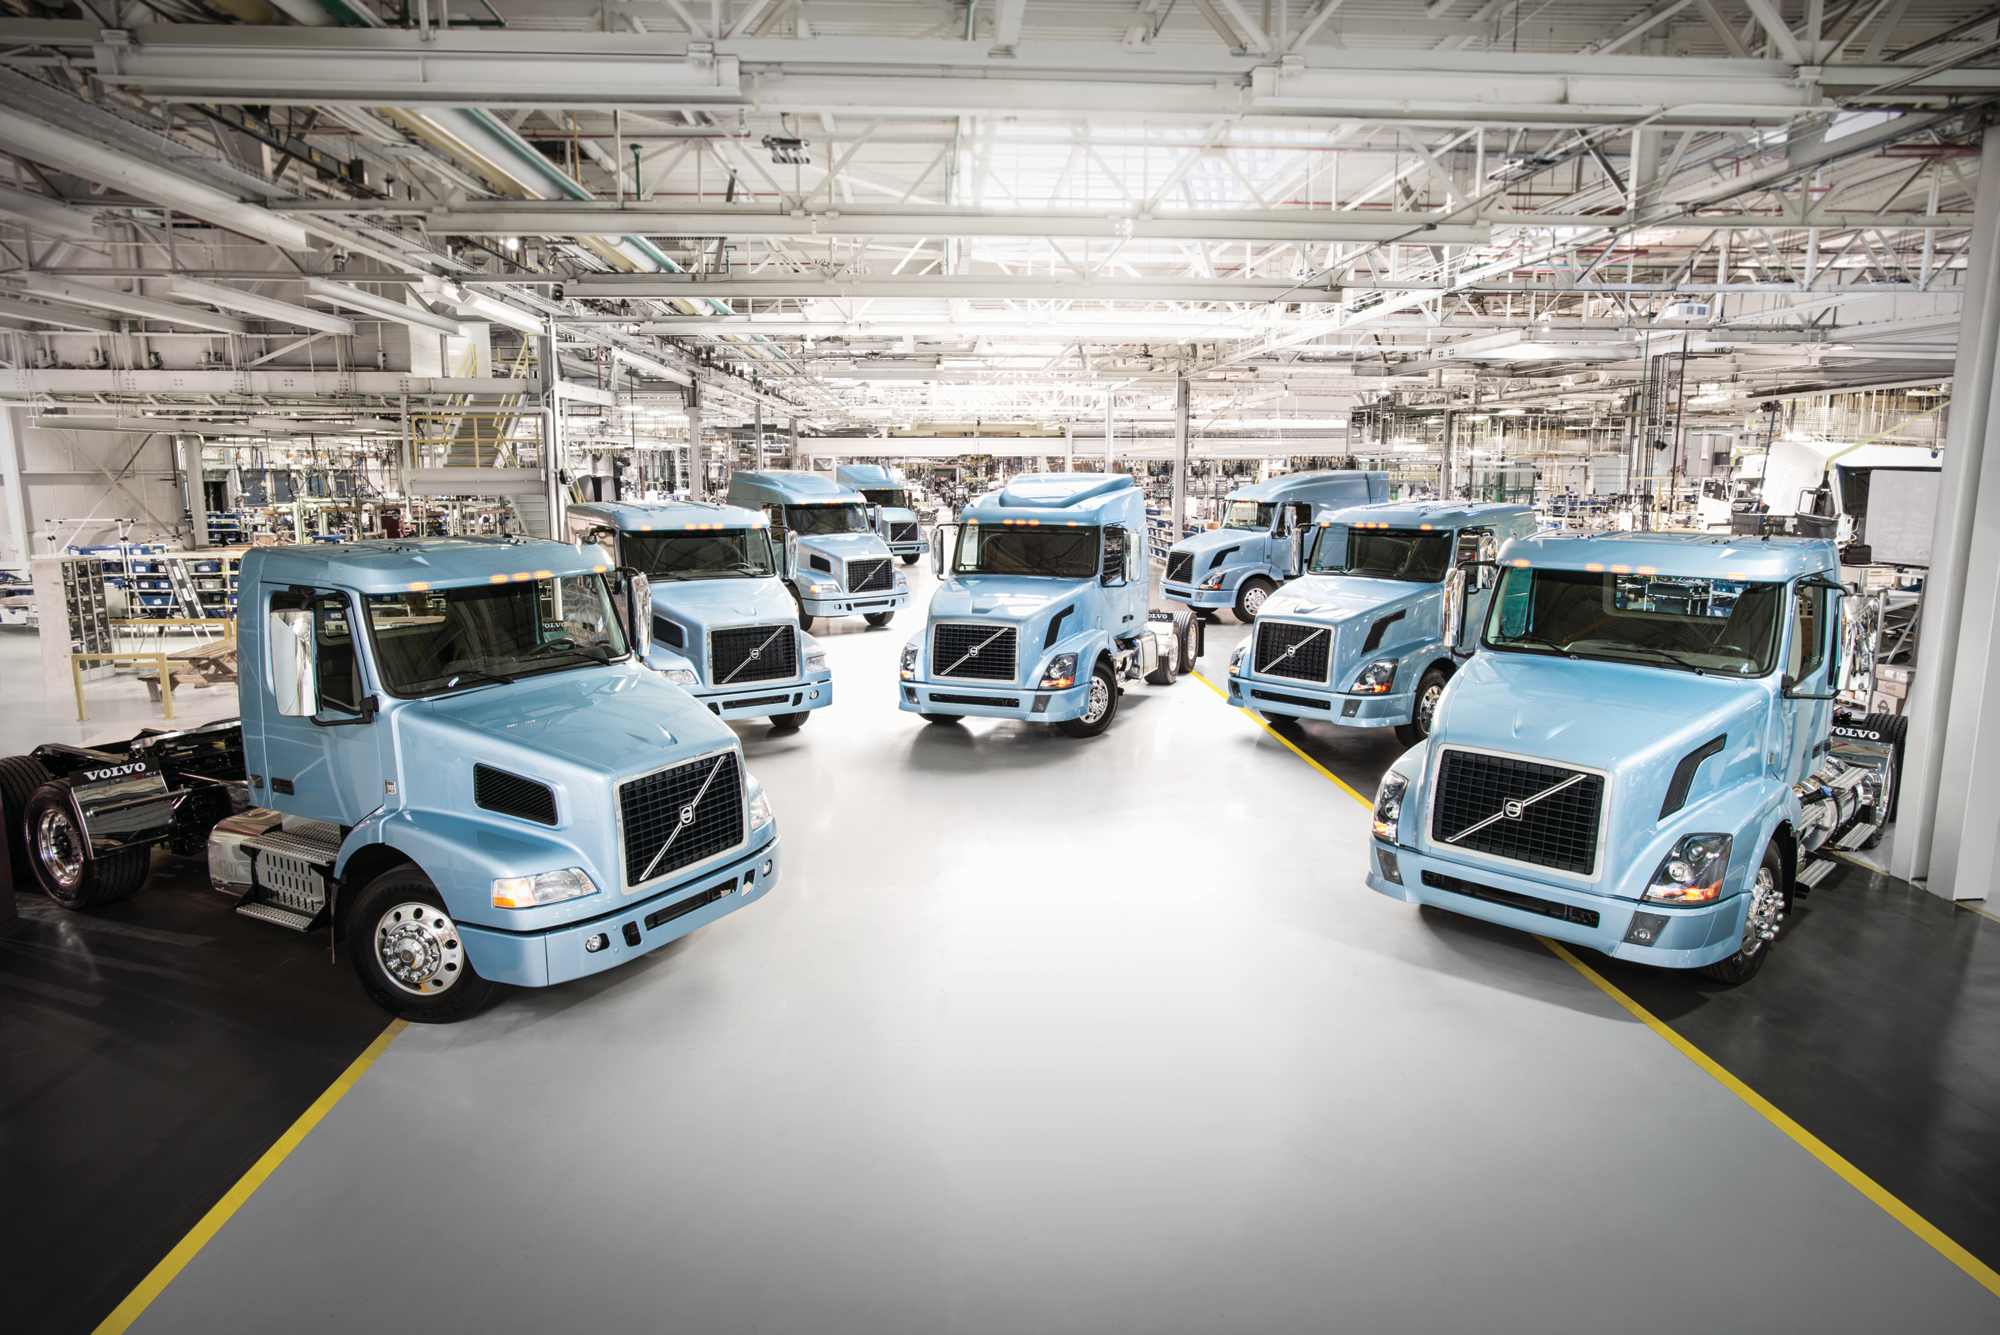 Volvo fleet management system